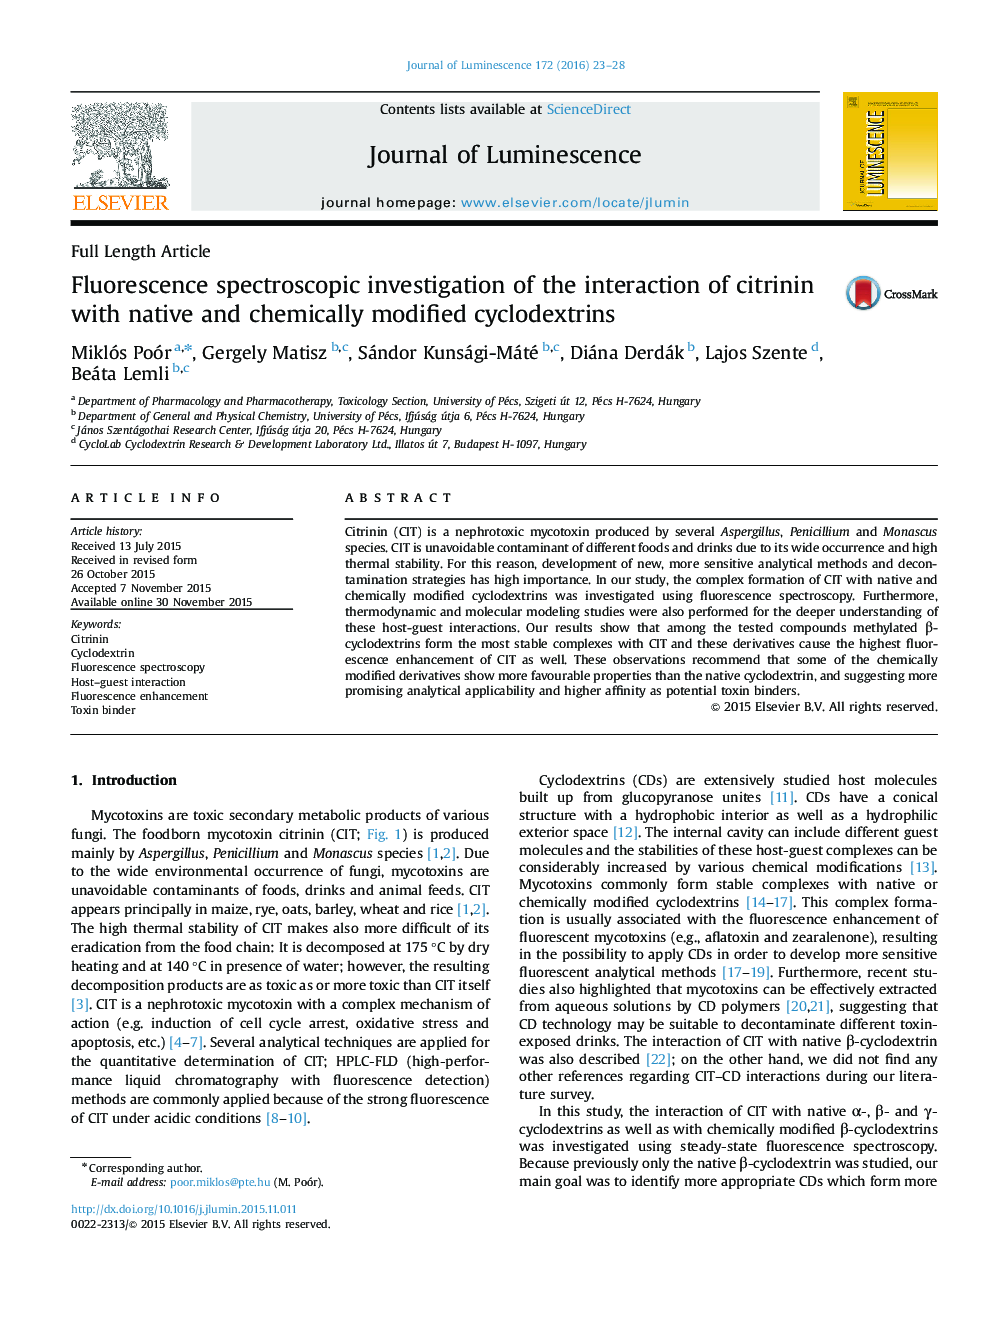 بررسی طیف سنجی فلورسانس در تعامل سیترینین با سیکلوکودکسترین های بومی و شیمیایی 